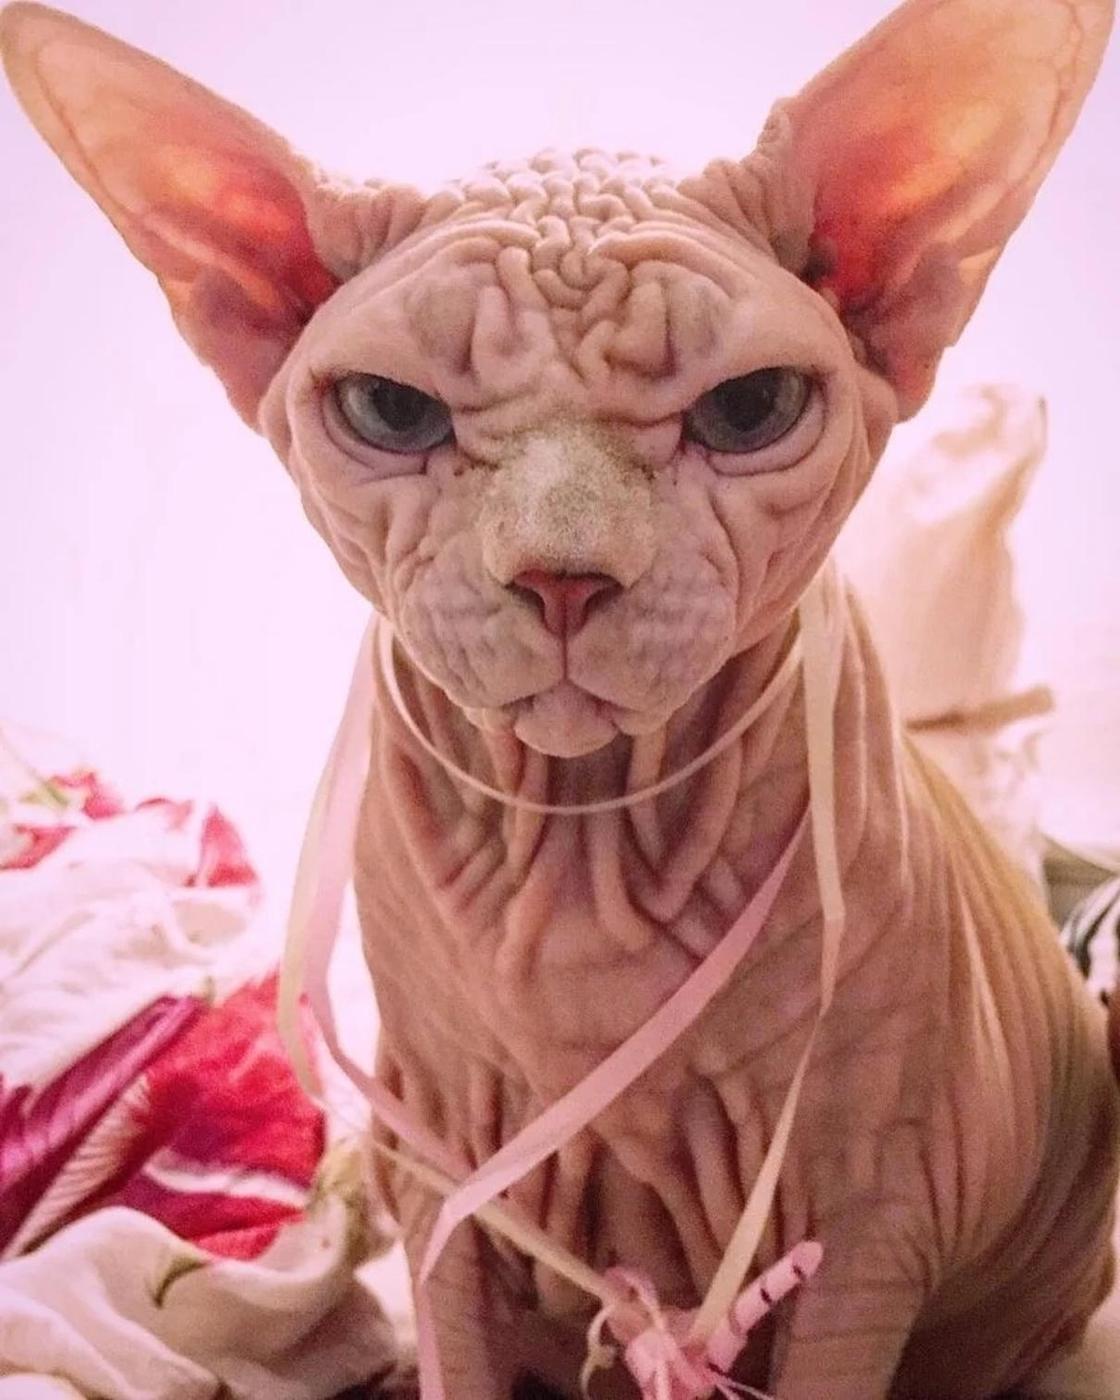 Лысый кот с суровым взглядом набирает популярность в Instagram